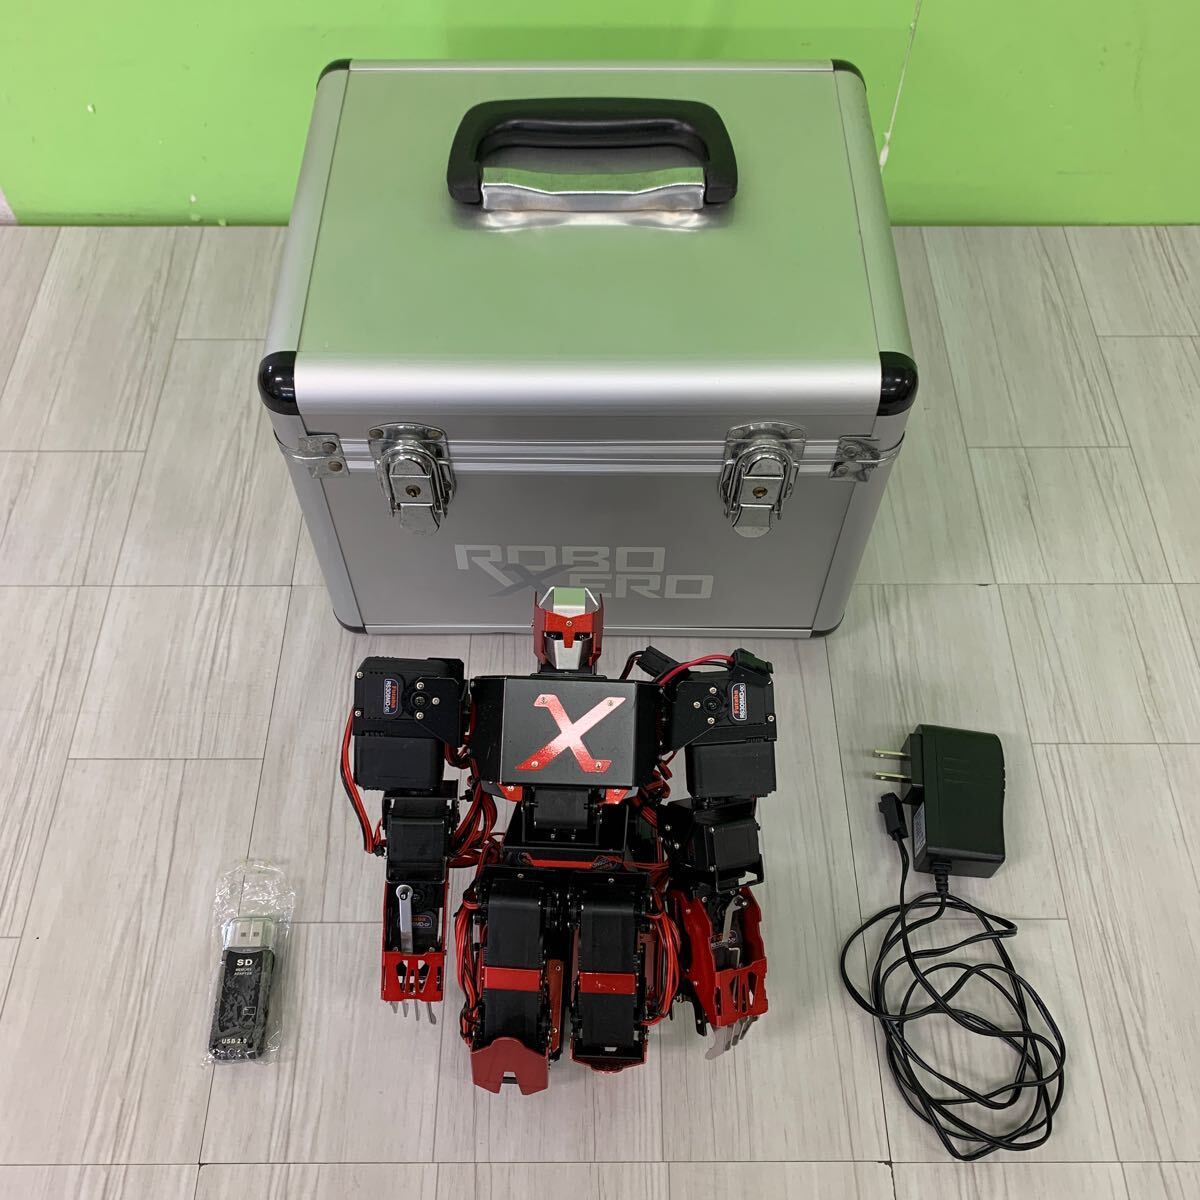  Junk necessary verification tiagoz tea ni weekly Robot Zero ROBO XERO body charger case 